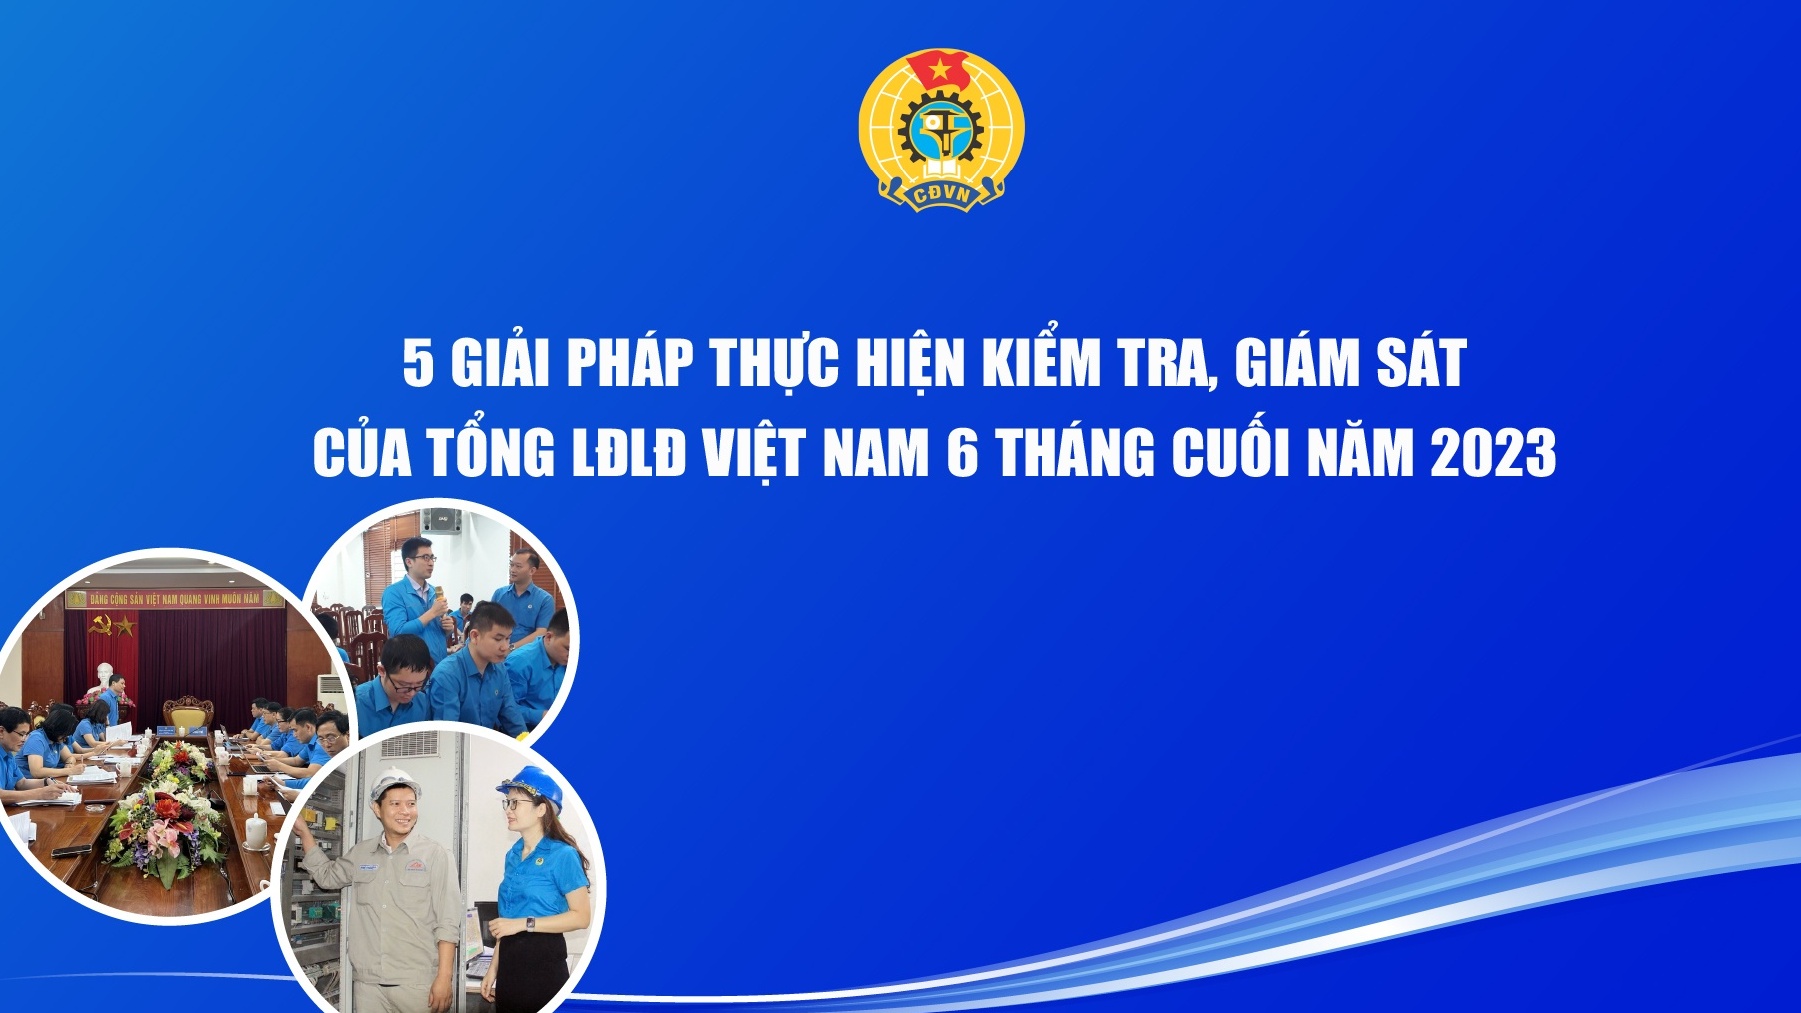 5 giải pháp thực hiện kiểm tra, giám sát của Tổng LĐLĐ Việt Nam nửa cuối 2023